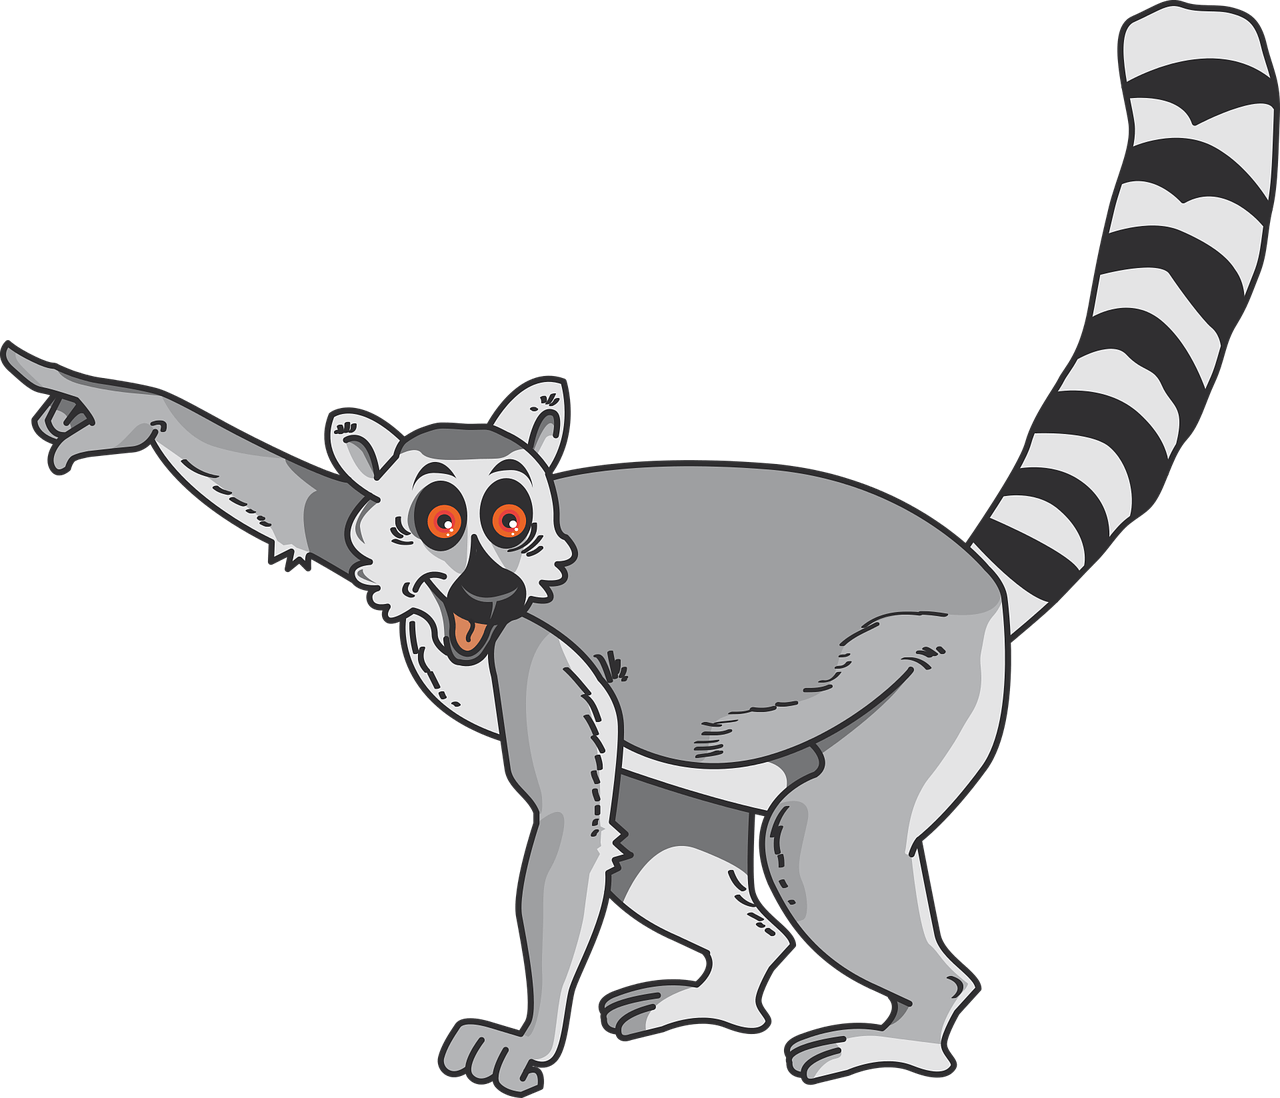 lemur g15a44a339 1280